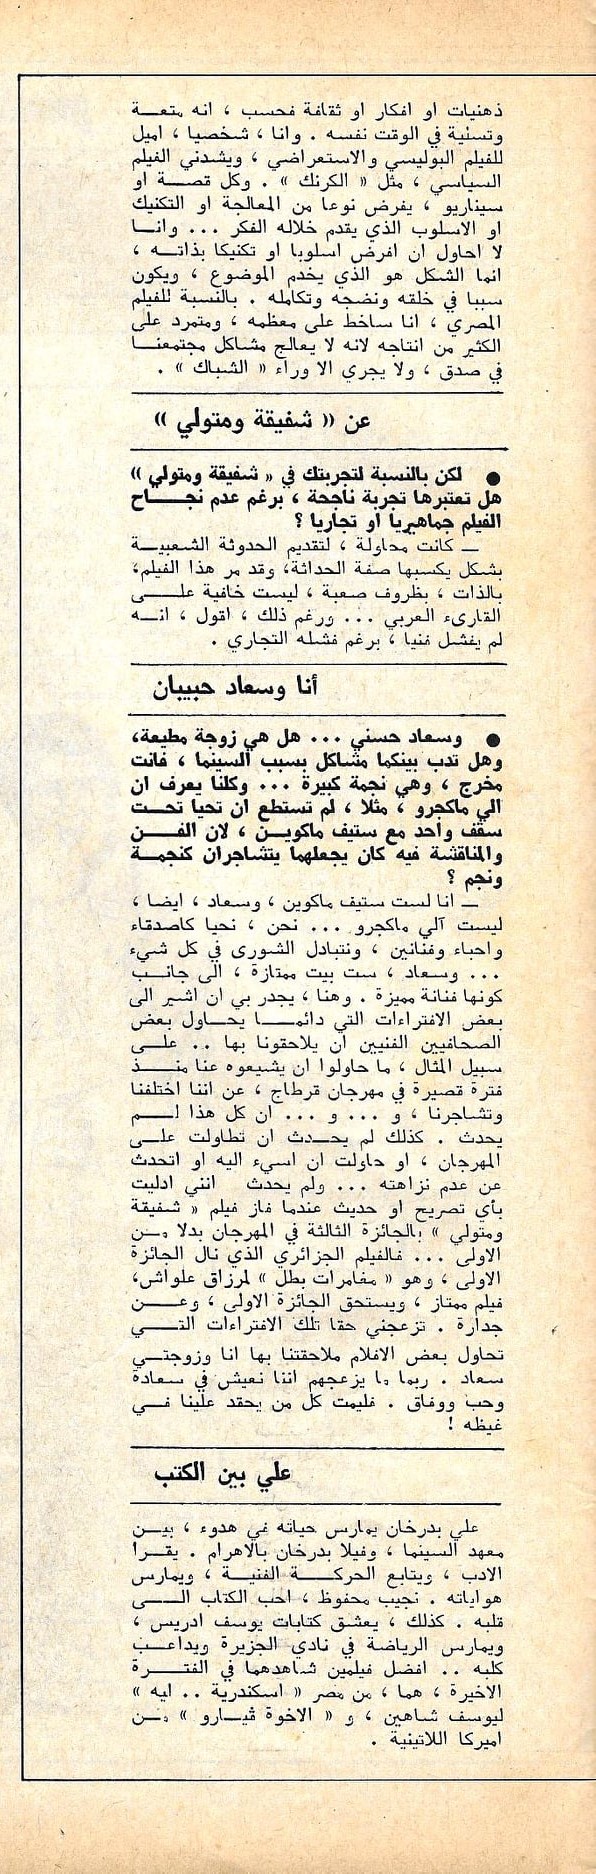 حوار صحفي : علي بدرخان .. لماذا تفتري الصحافة علي وعلى زوجتي سعاد حسني ؟ 1980 م 220